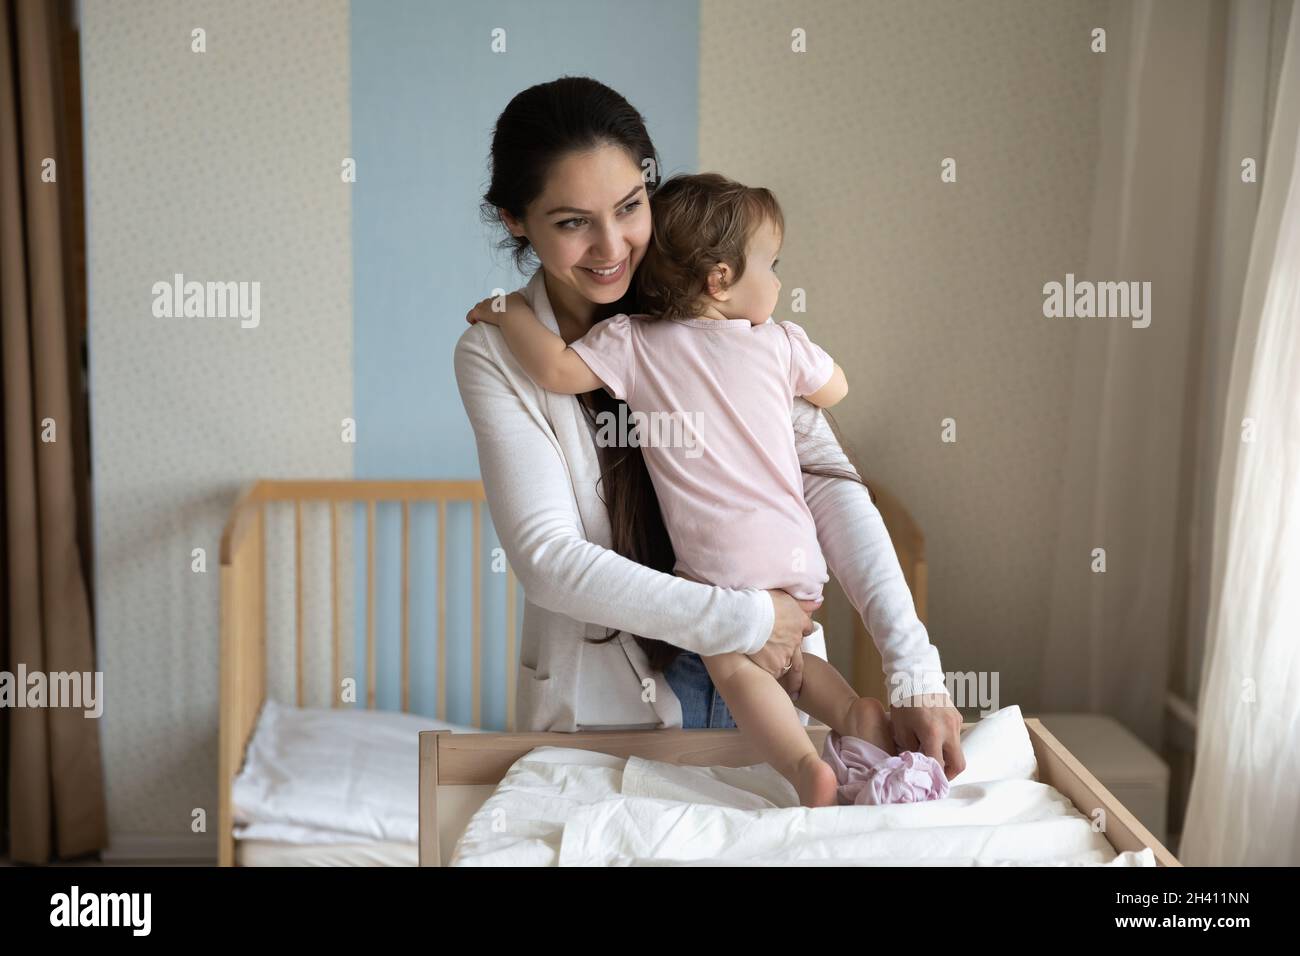 Lächelnd, fürsorgliche junge Mutter, die ihre Babykleidung wechselt, Windel auf dem Tisch Stockfoto